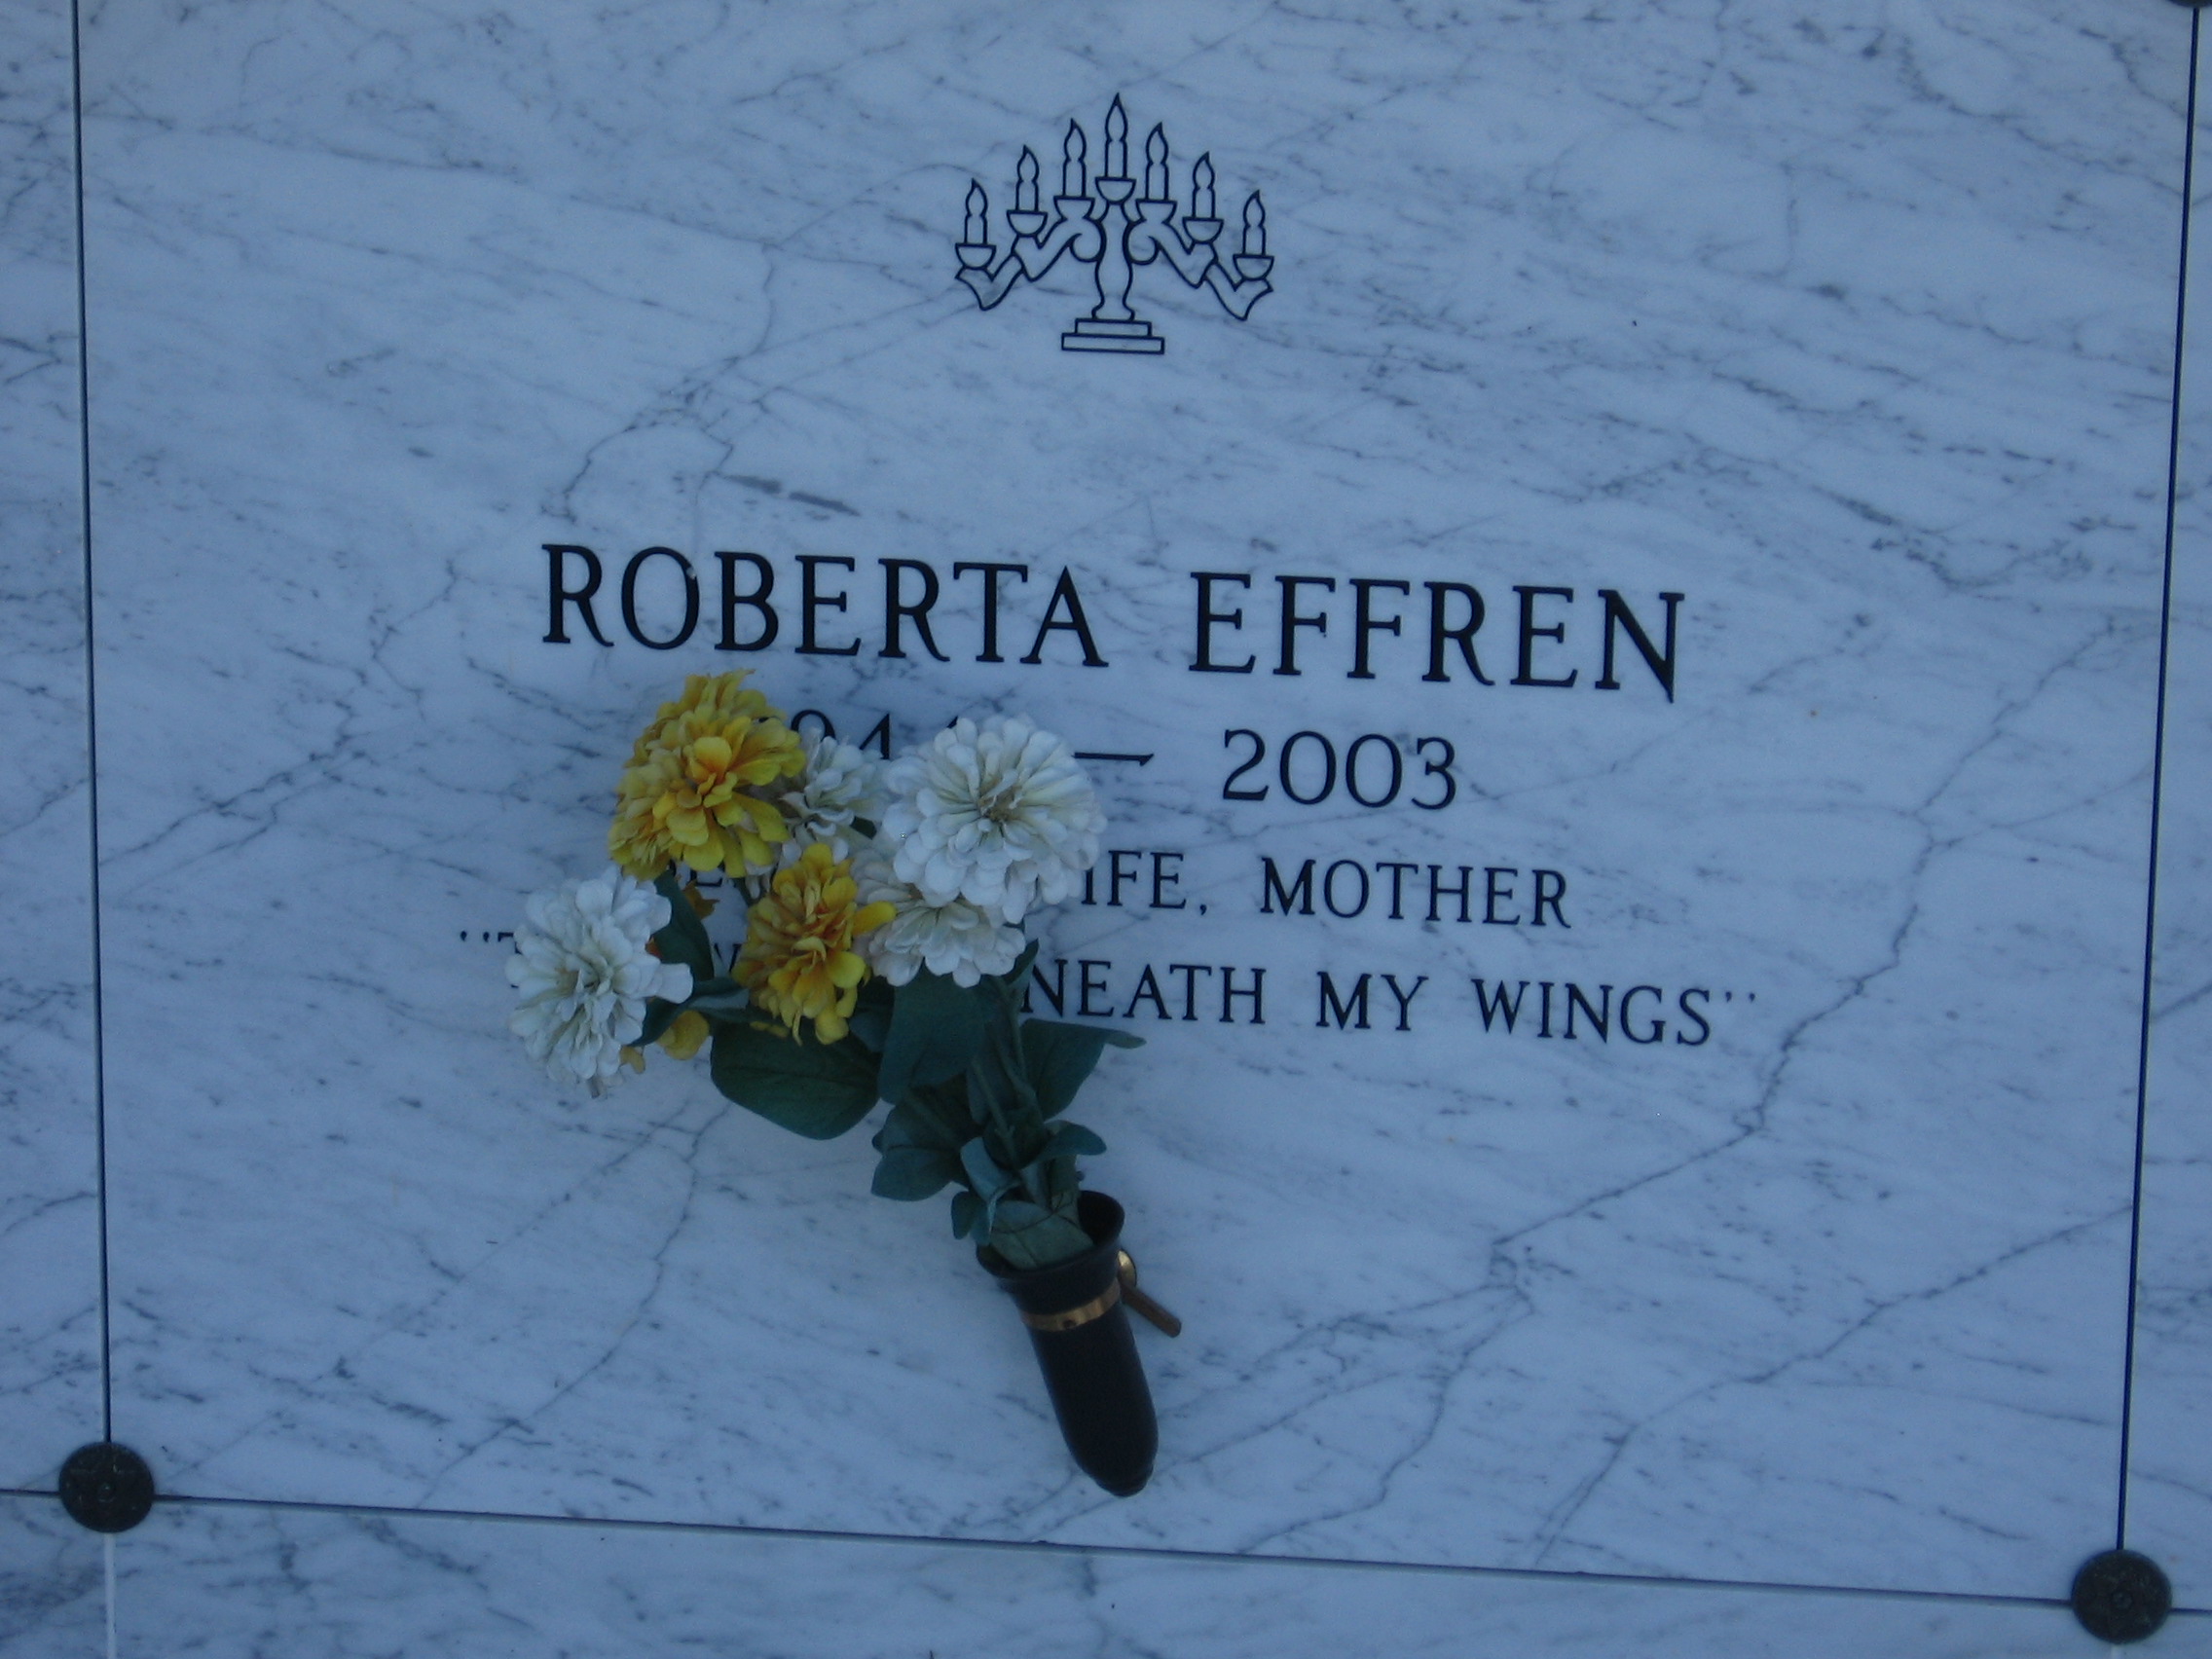 Roberta Effren